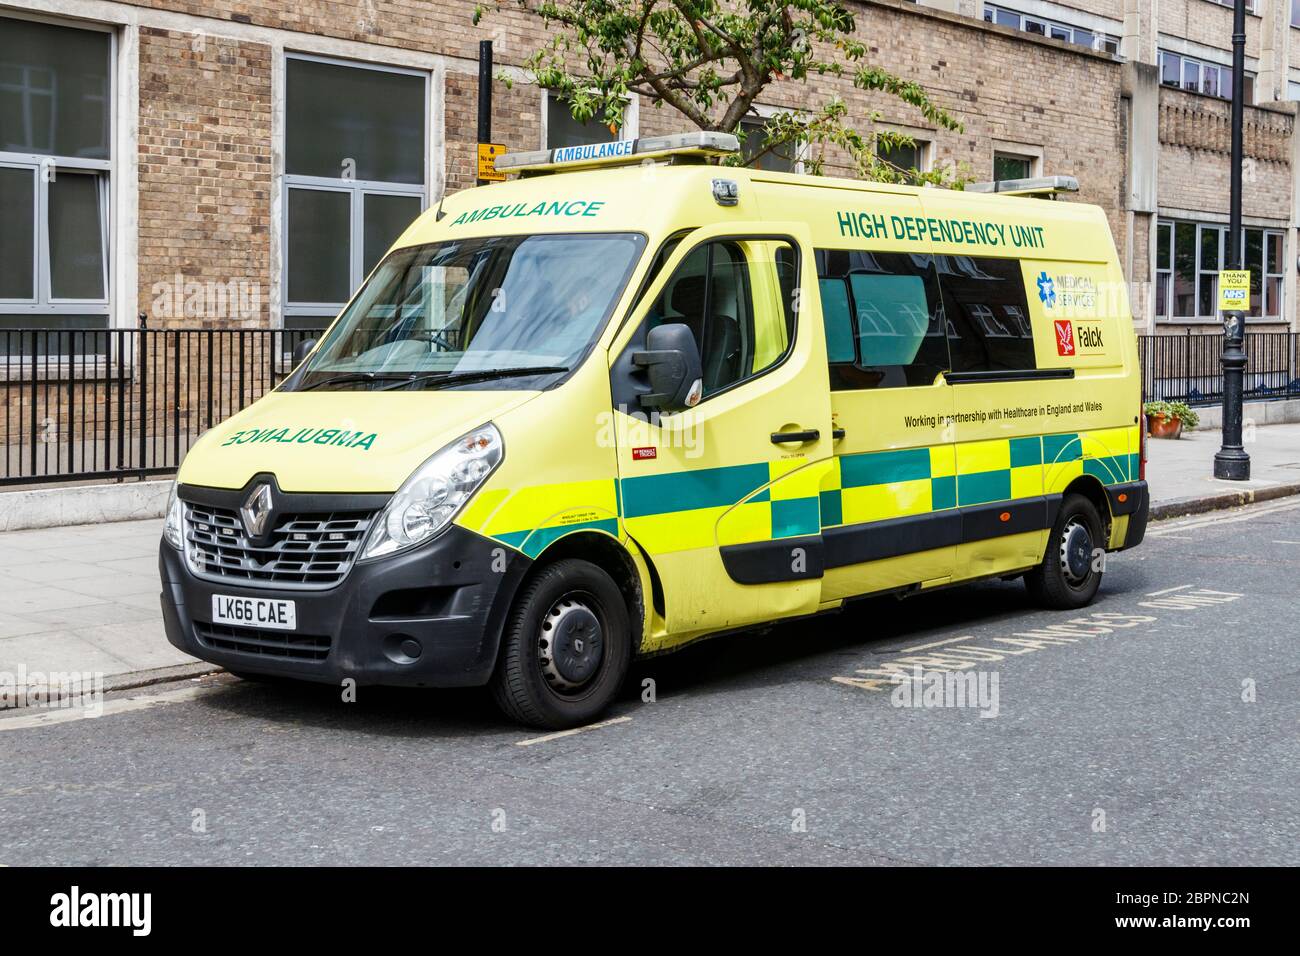 Une ambulance de l'unité de dépendance élevée stationnée à l'extérieur de l'hôpital pour enfants de Great Ormond Street, Londres, Royaume-Uni Banque D'Images